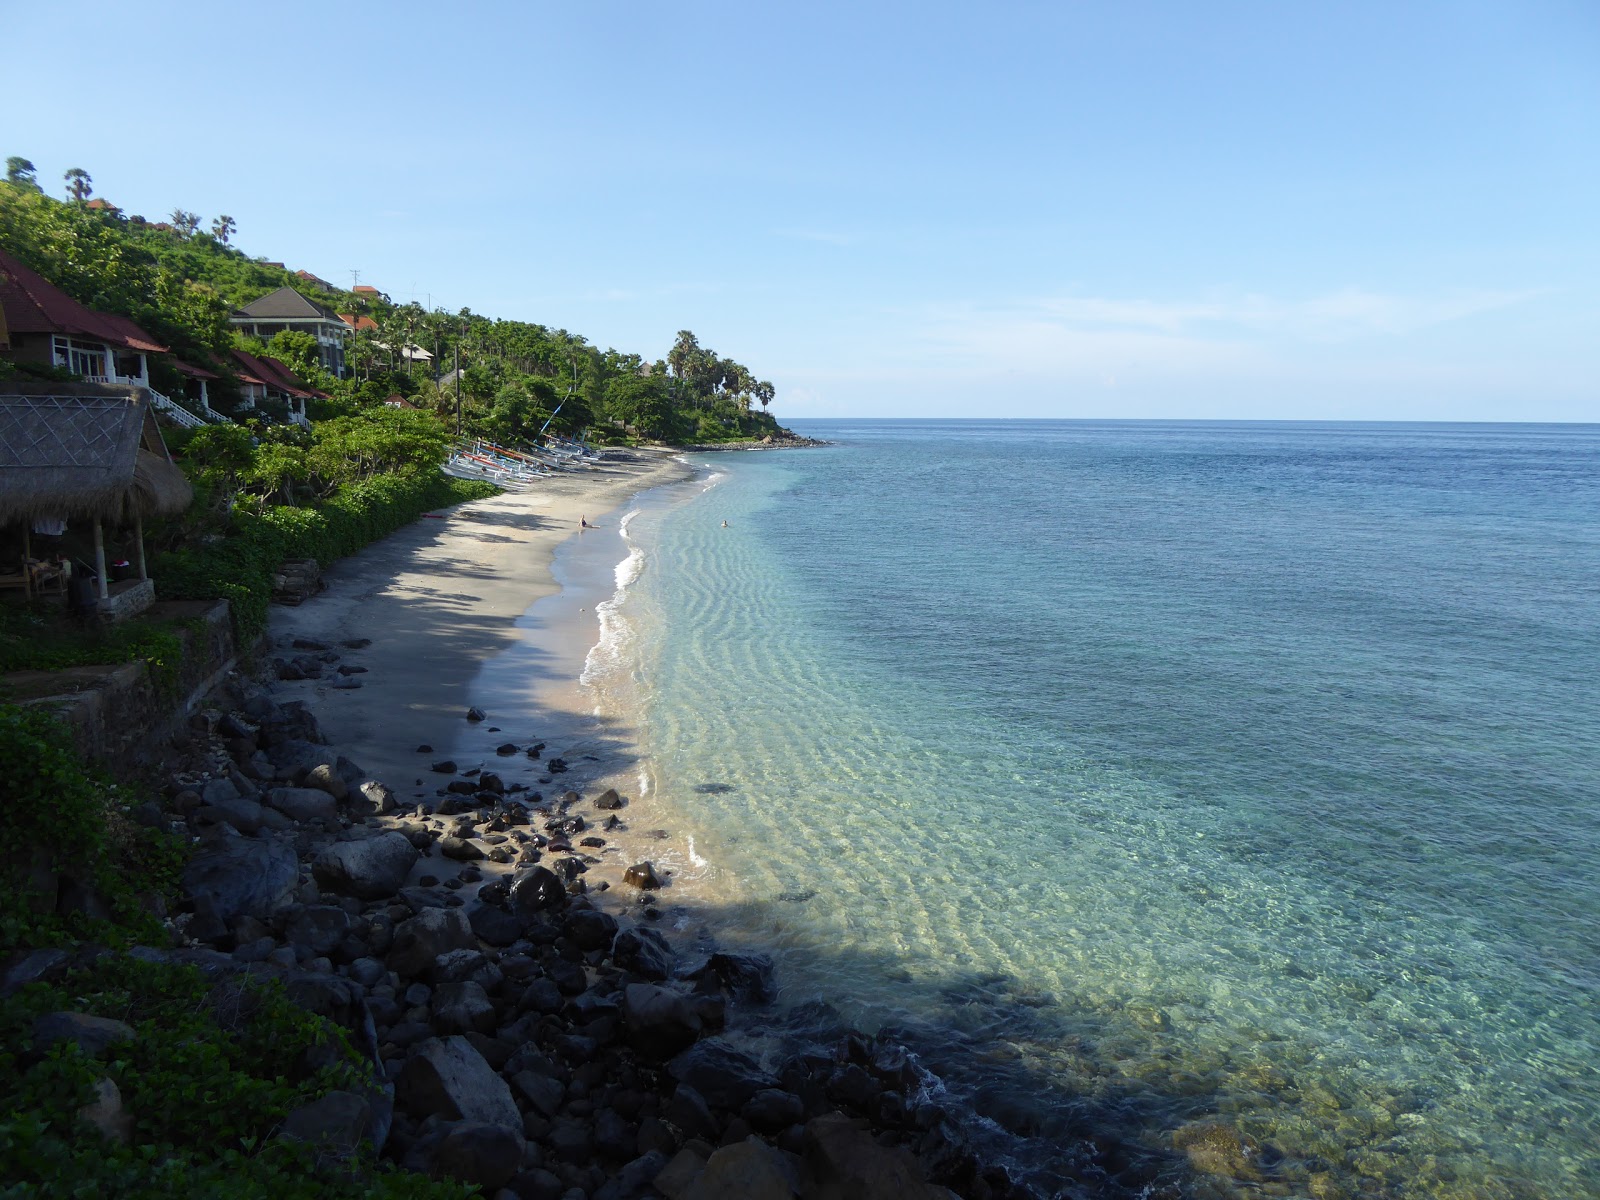 Photo de Ibus Beach - endroit populaire parmi les connaisseurs de la détente